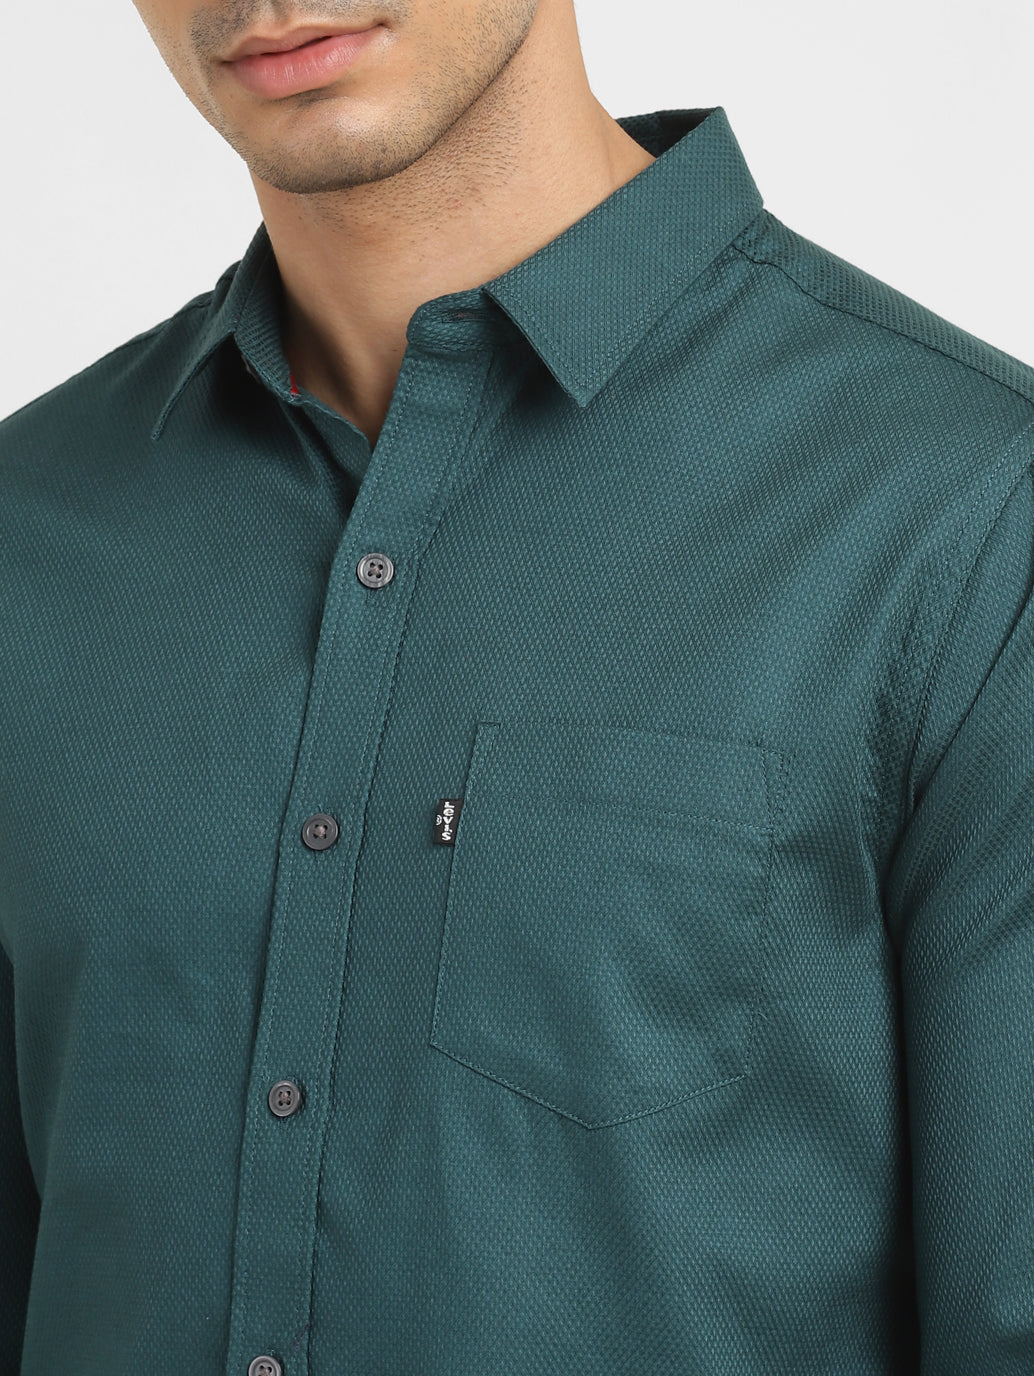 Men's Self Design Slim Fit Shirt